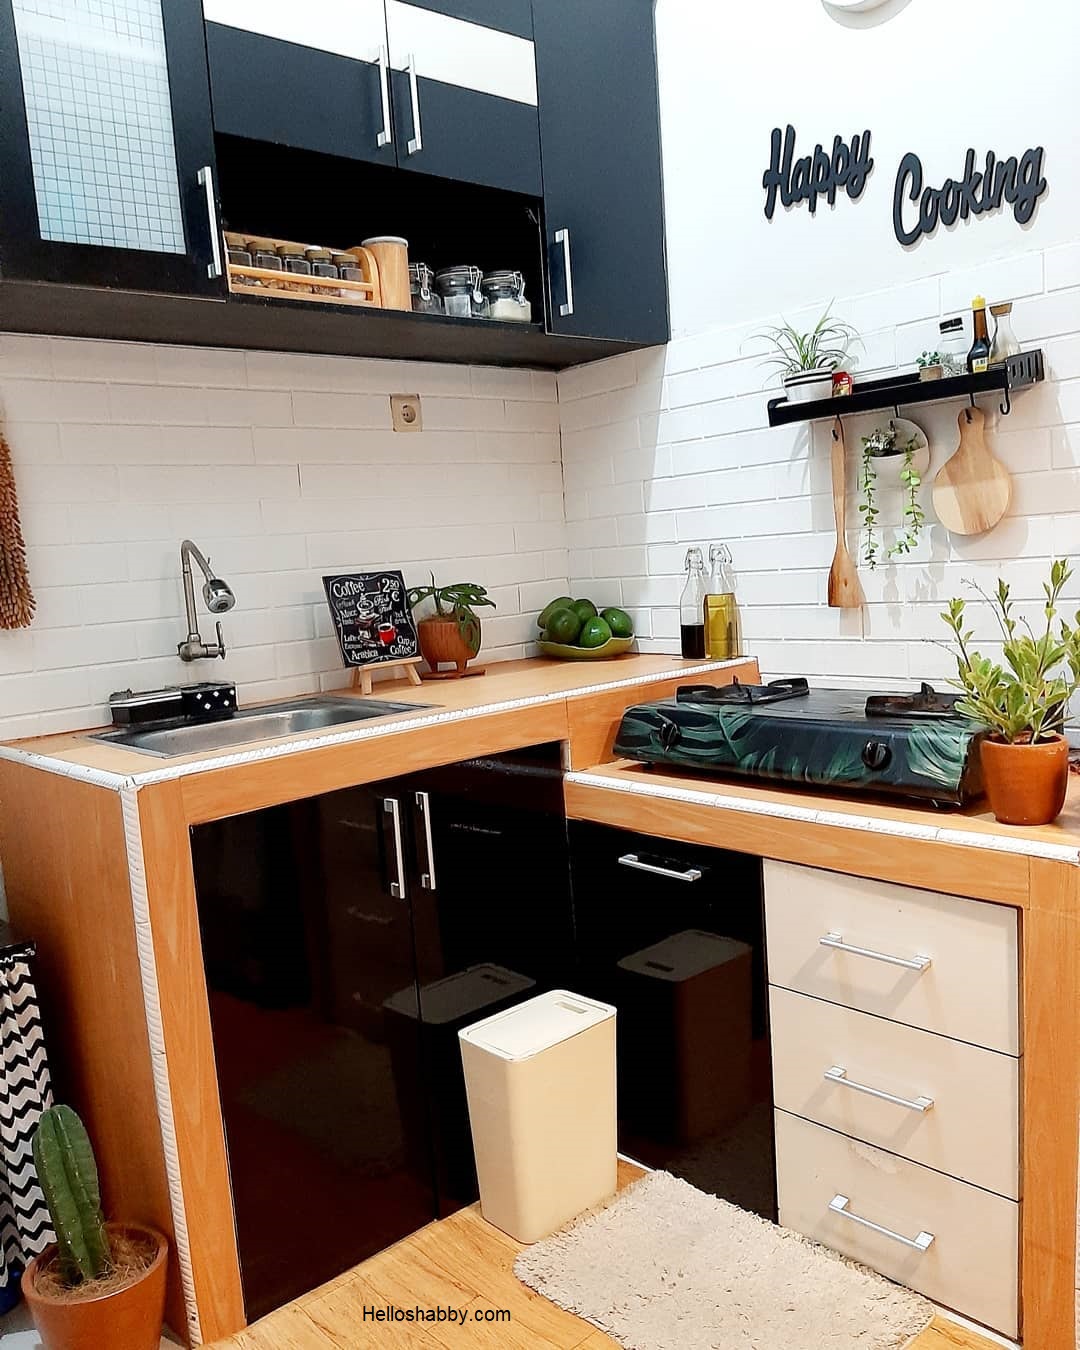 7 Desain Dapur Minimalis Dengan Kitchen Set Murah HelloShabby